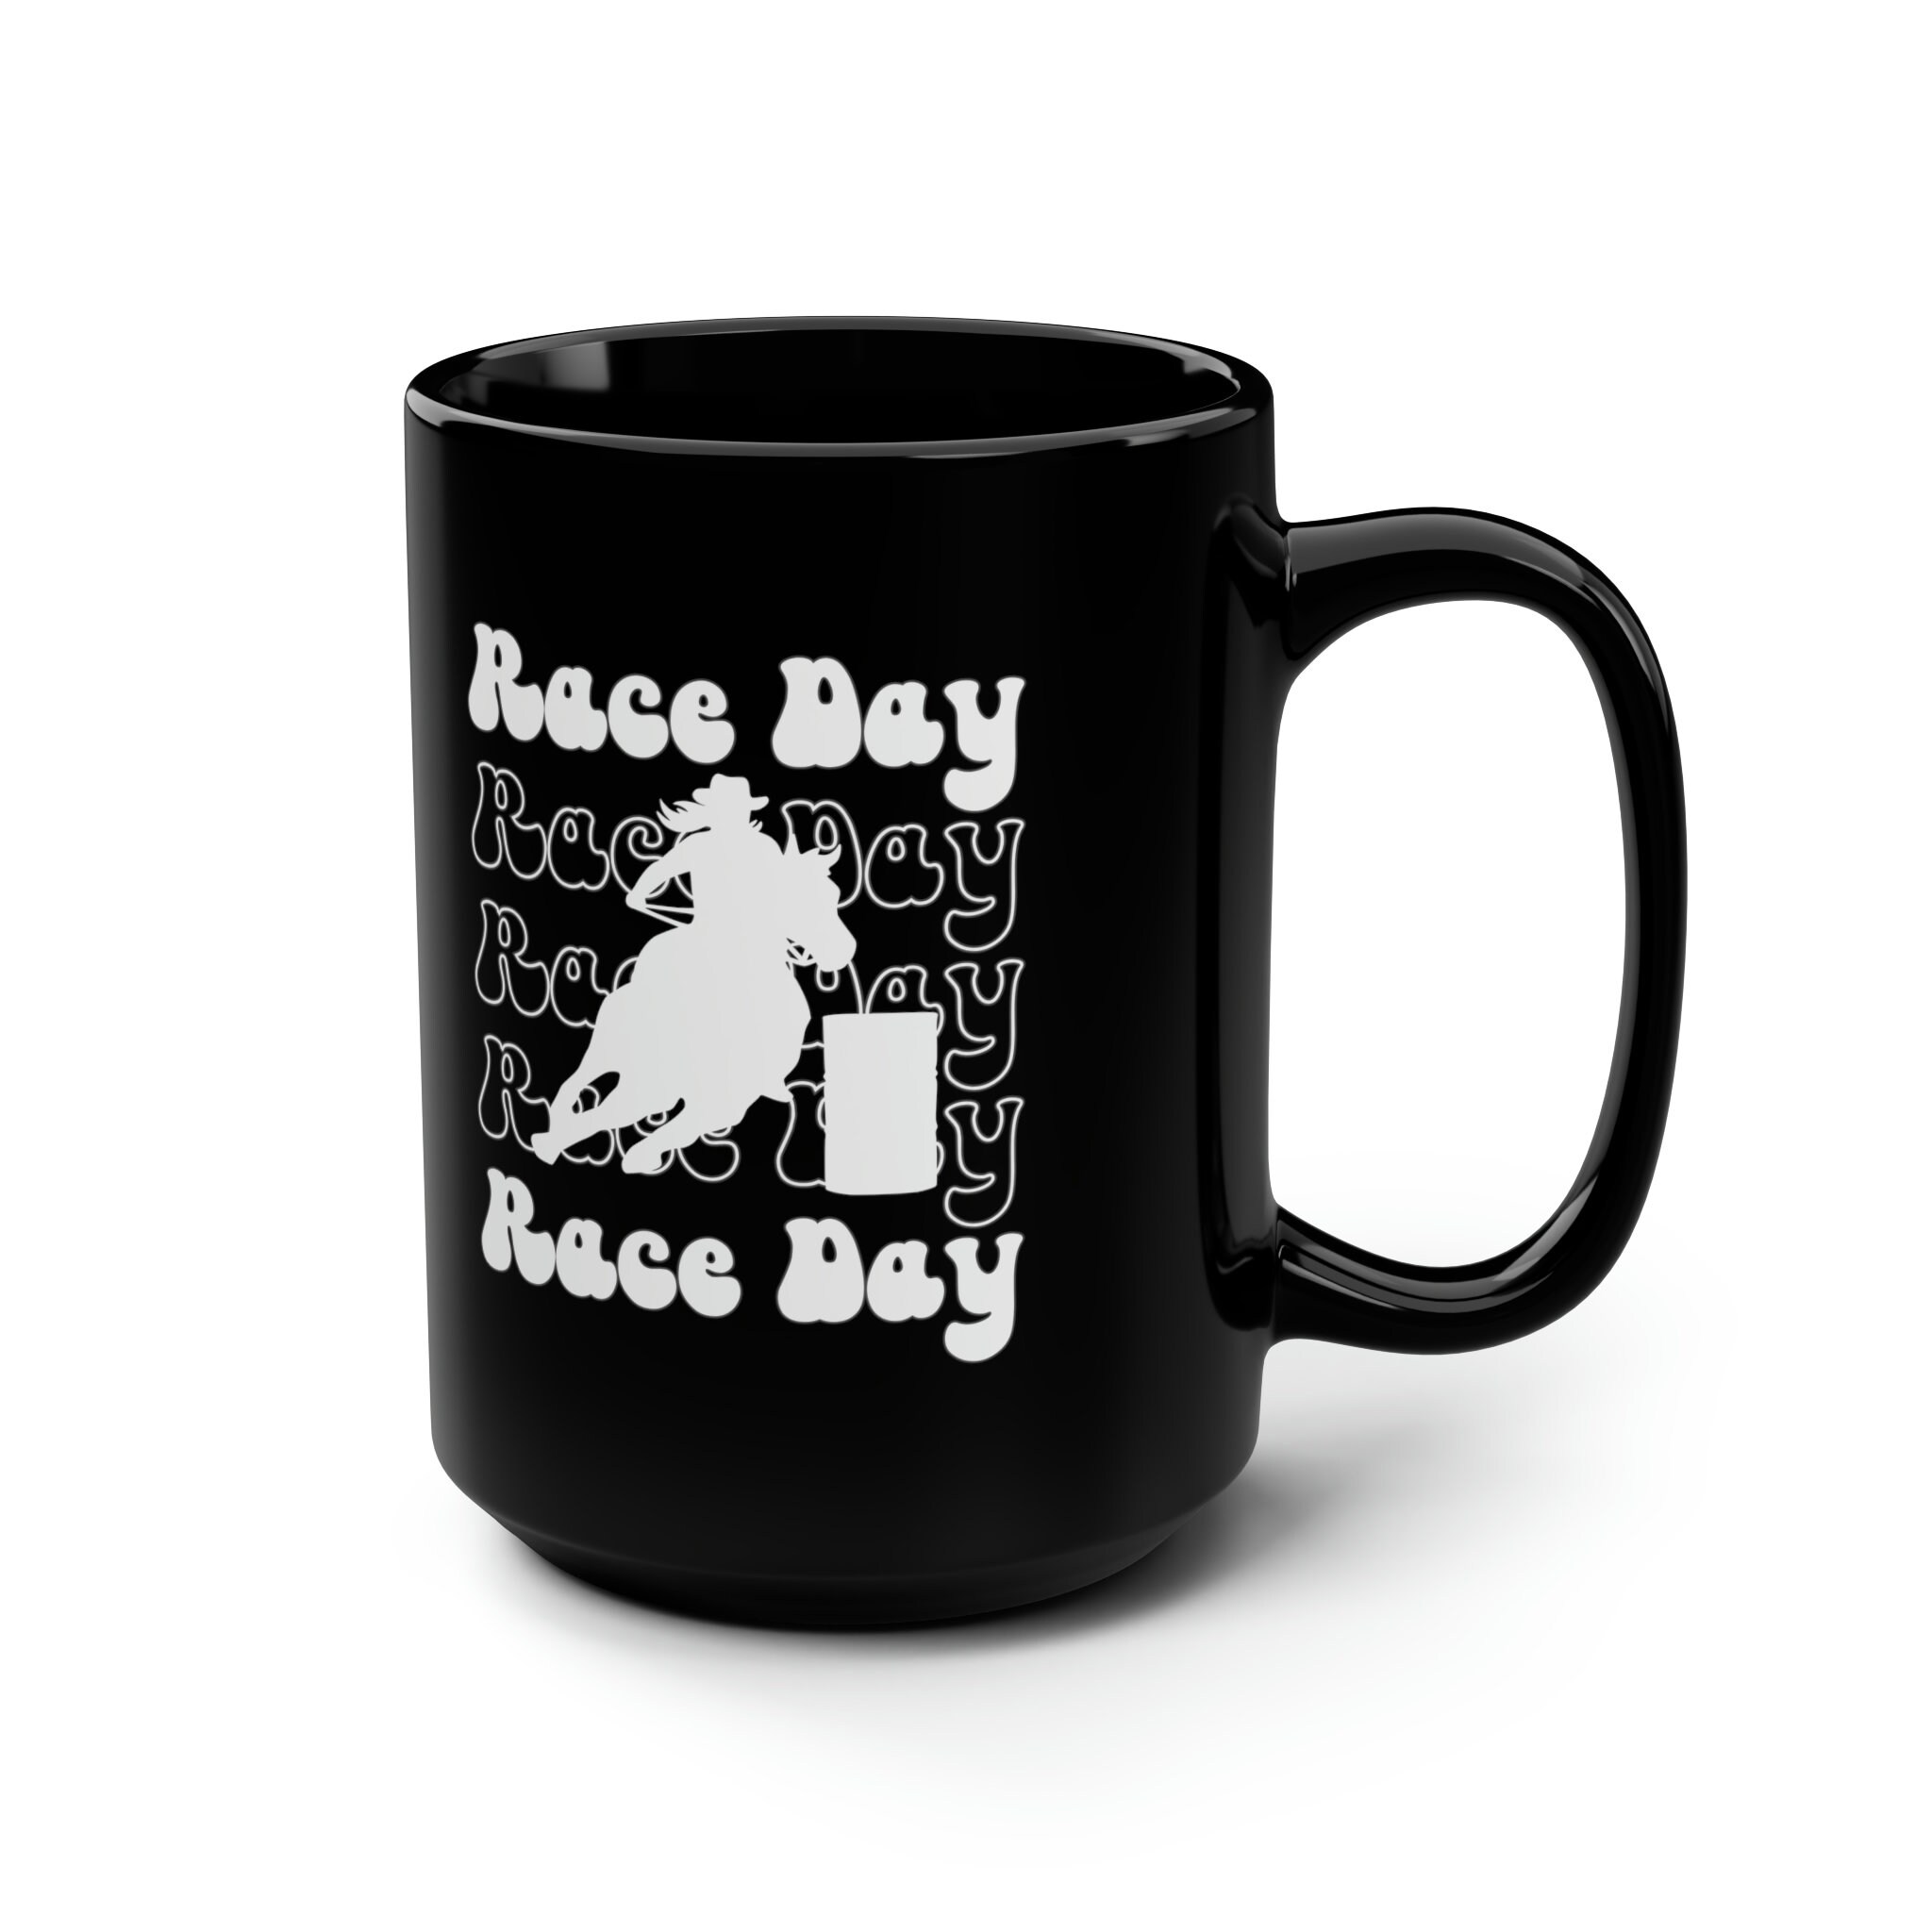 Barrel Racing Race Day Mug, Barrel Racing Coffee Cup, Barrel Race Mom Coffee Mug